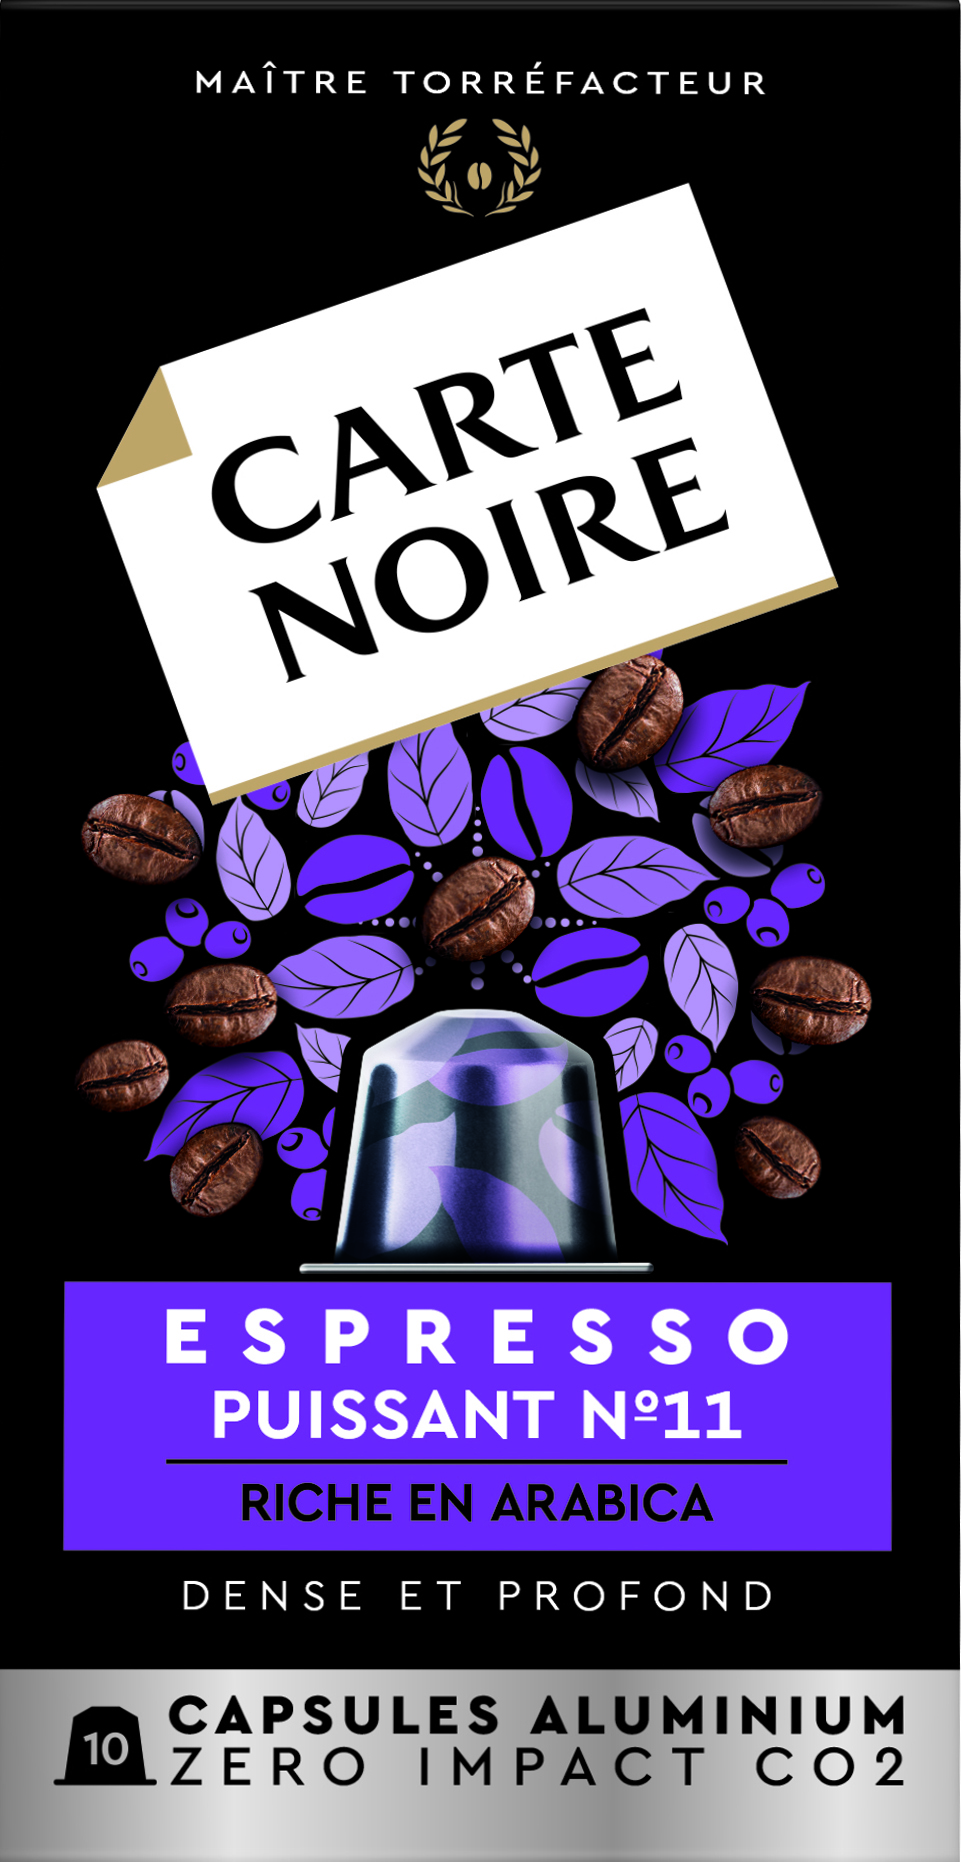 Capsule di caffè espresso potenti compatibili con Nespresso; x10; 55 g - CARTE NOIRE